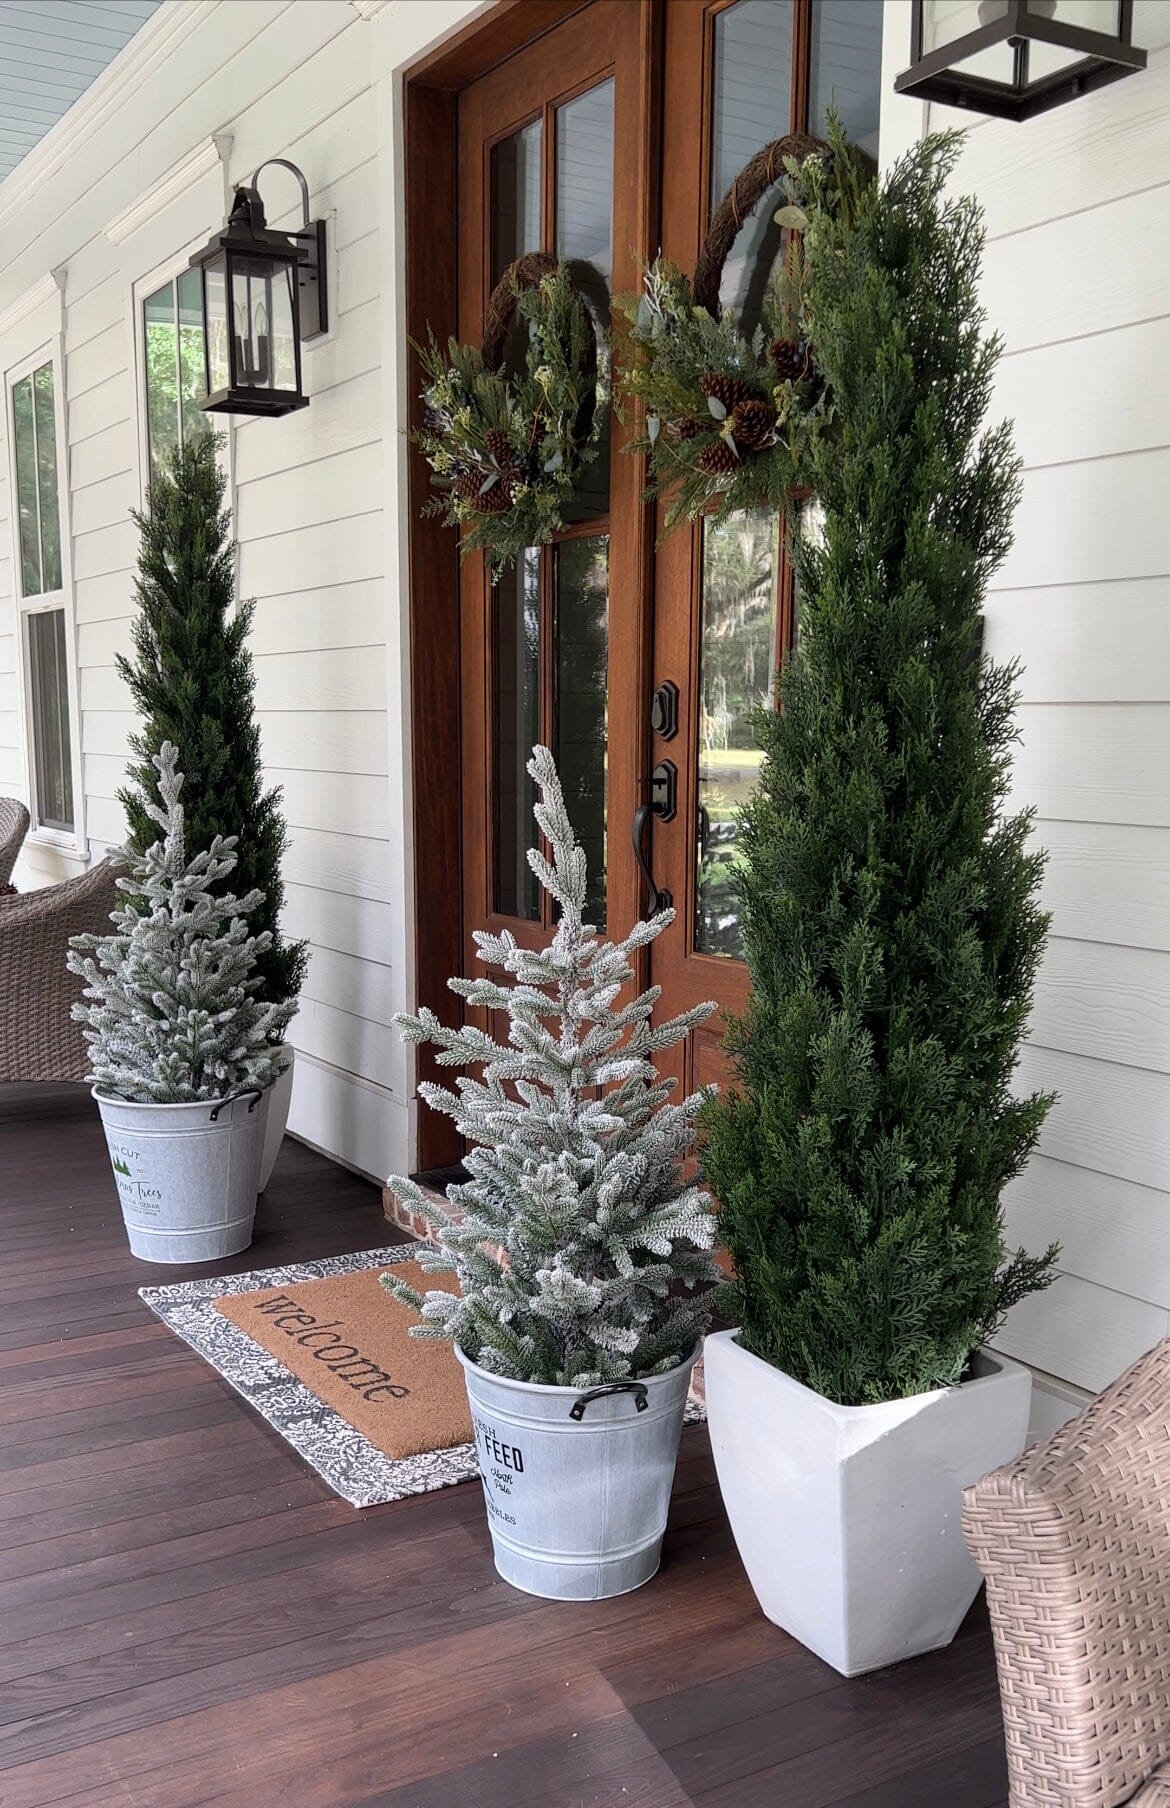 6' Mini Cedar Pine Tree (Indoor/Outdoor)